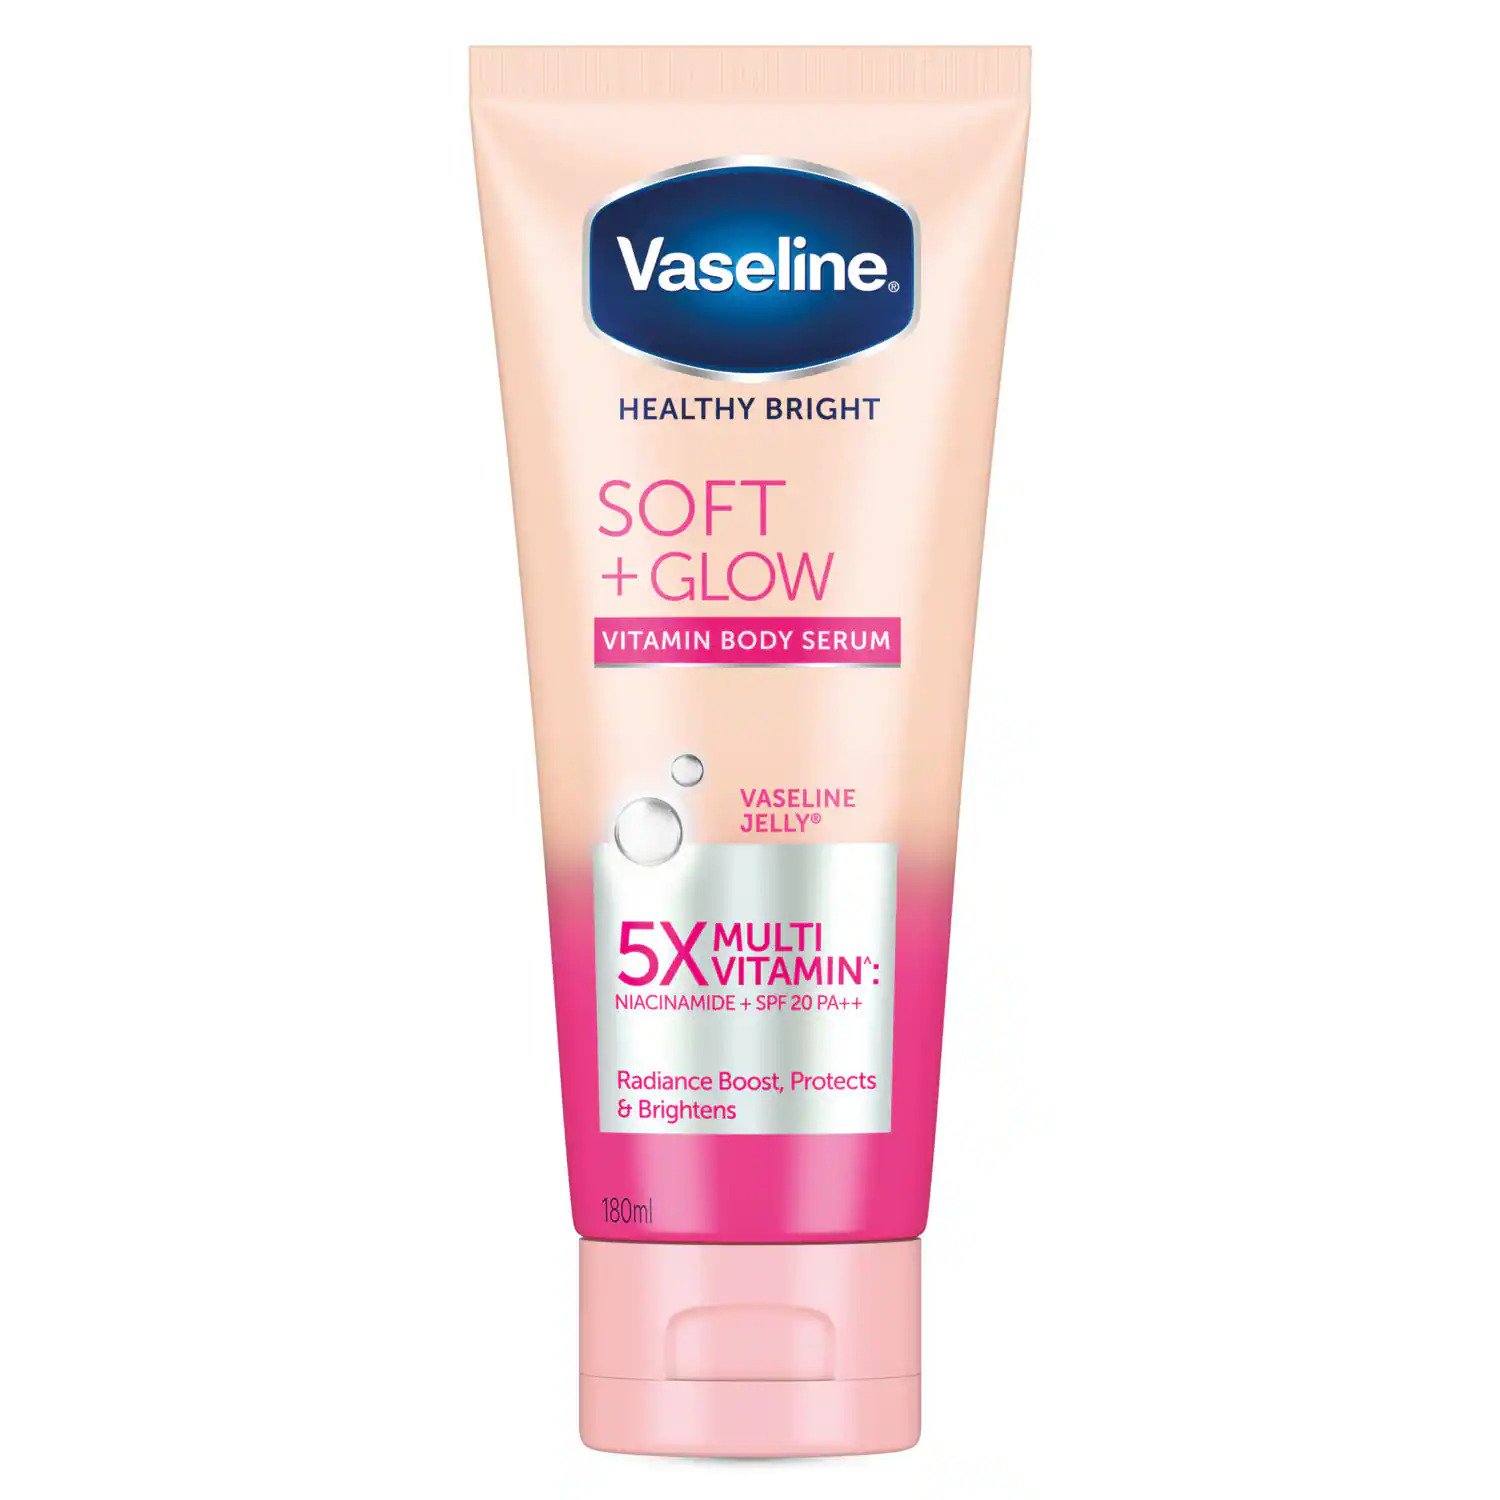 Manfaat Vaseline Soft Glow Vitamin Body Serum untuk Menutrisi Kulit